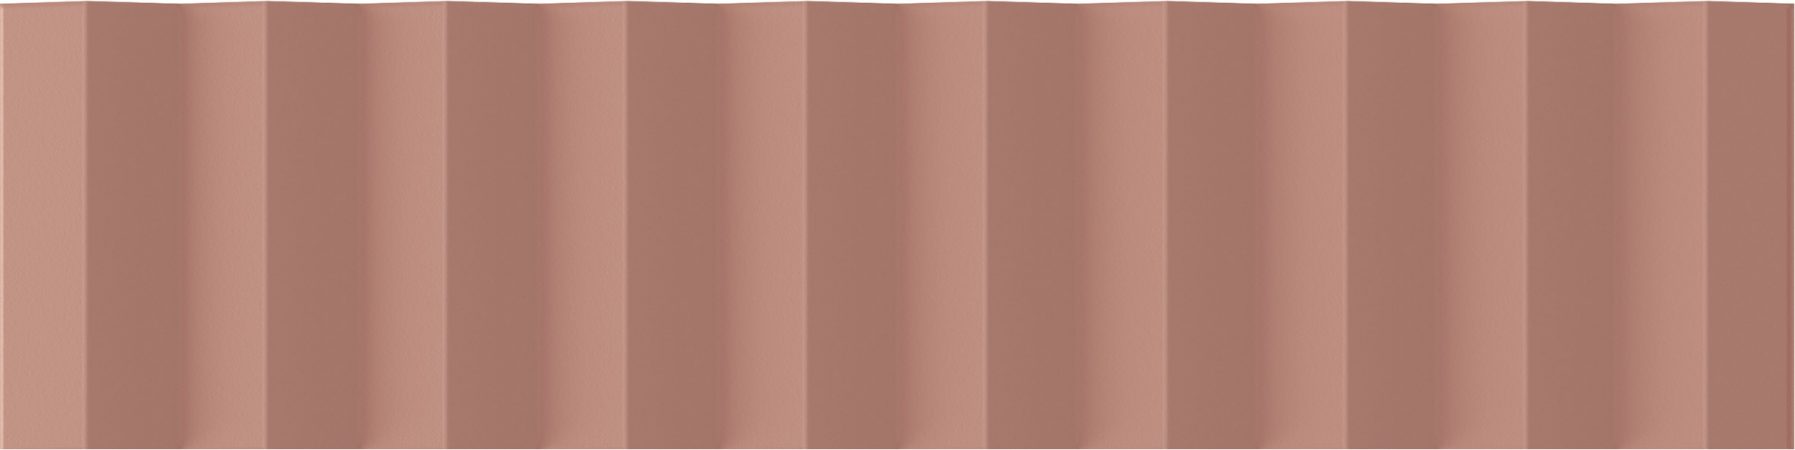 Керамическая плитка Wow Twin Peaks Up Cotto 131545, цвет терракотовый, поверхность матовая 3d (объёмная), под кирпич, 75x300